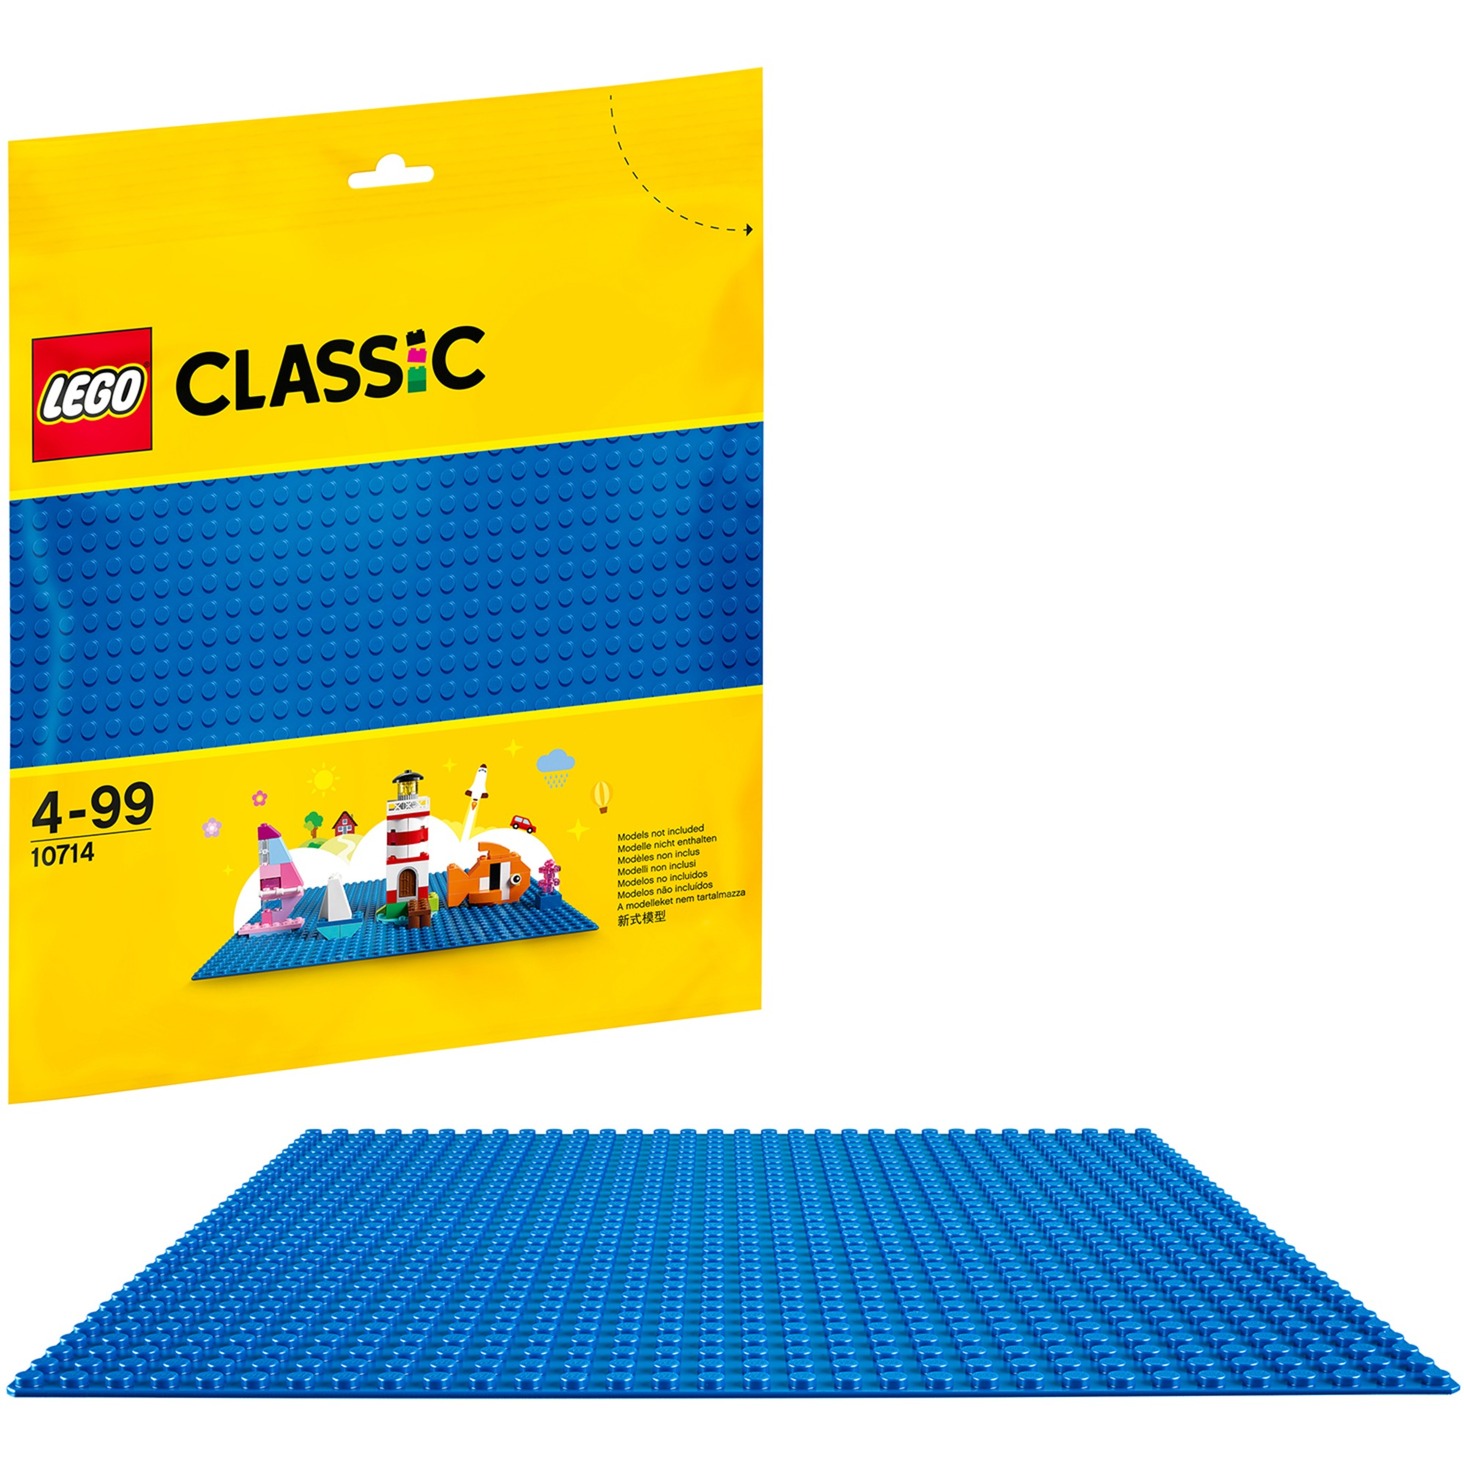 Image of Alternate - 10714 Classic Blaue Bauplatte, Konstruktionsspielzeug online einkaufen bei Alternate